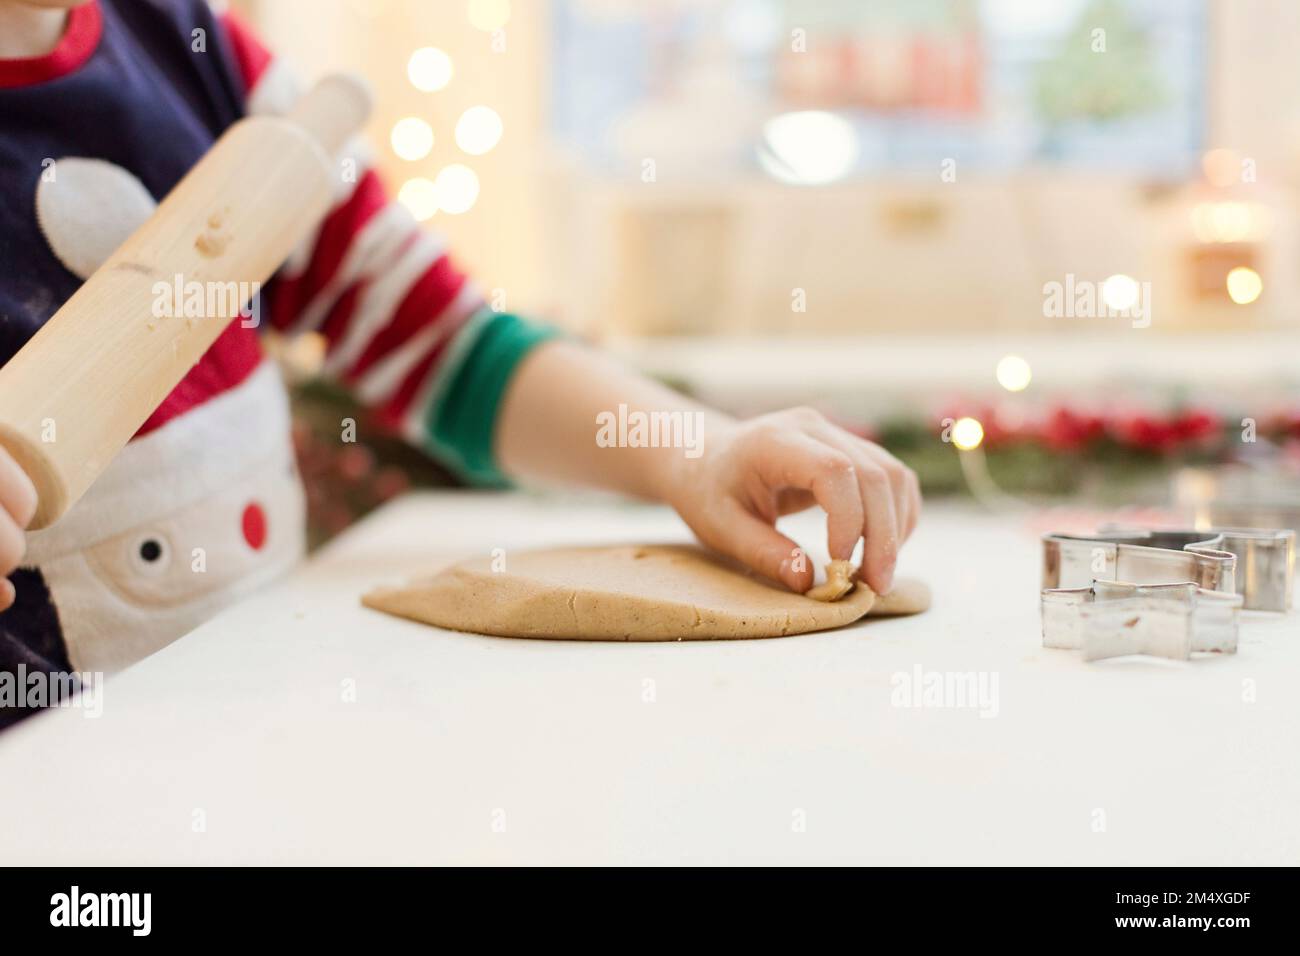 Die Hand eines Jungen, der Lebkuchenteig am Küchentisch rollt Stockfoto